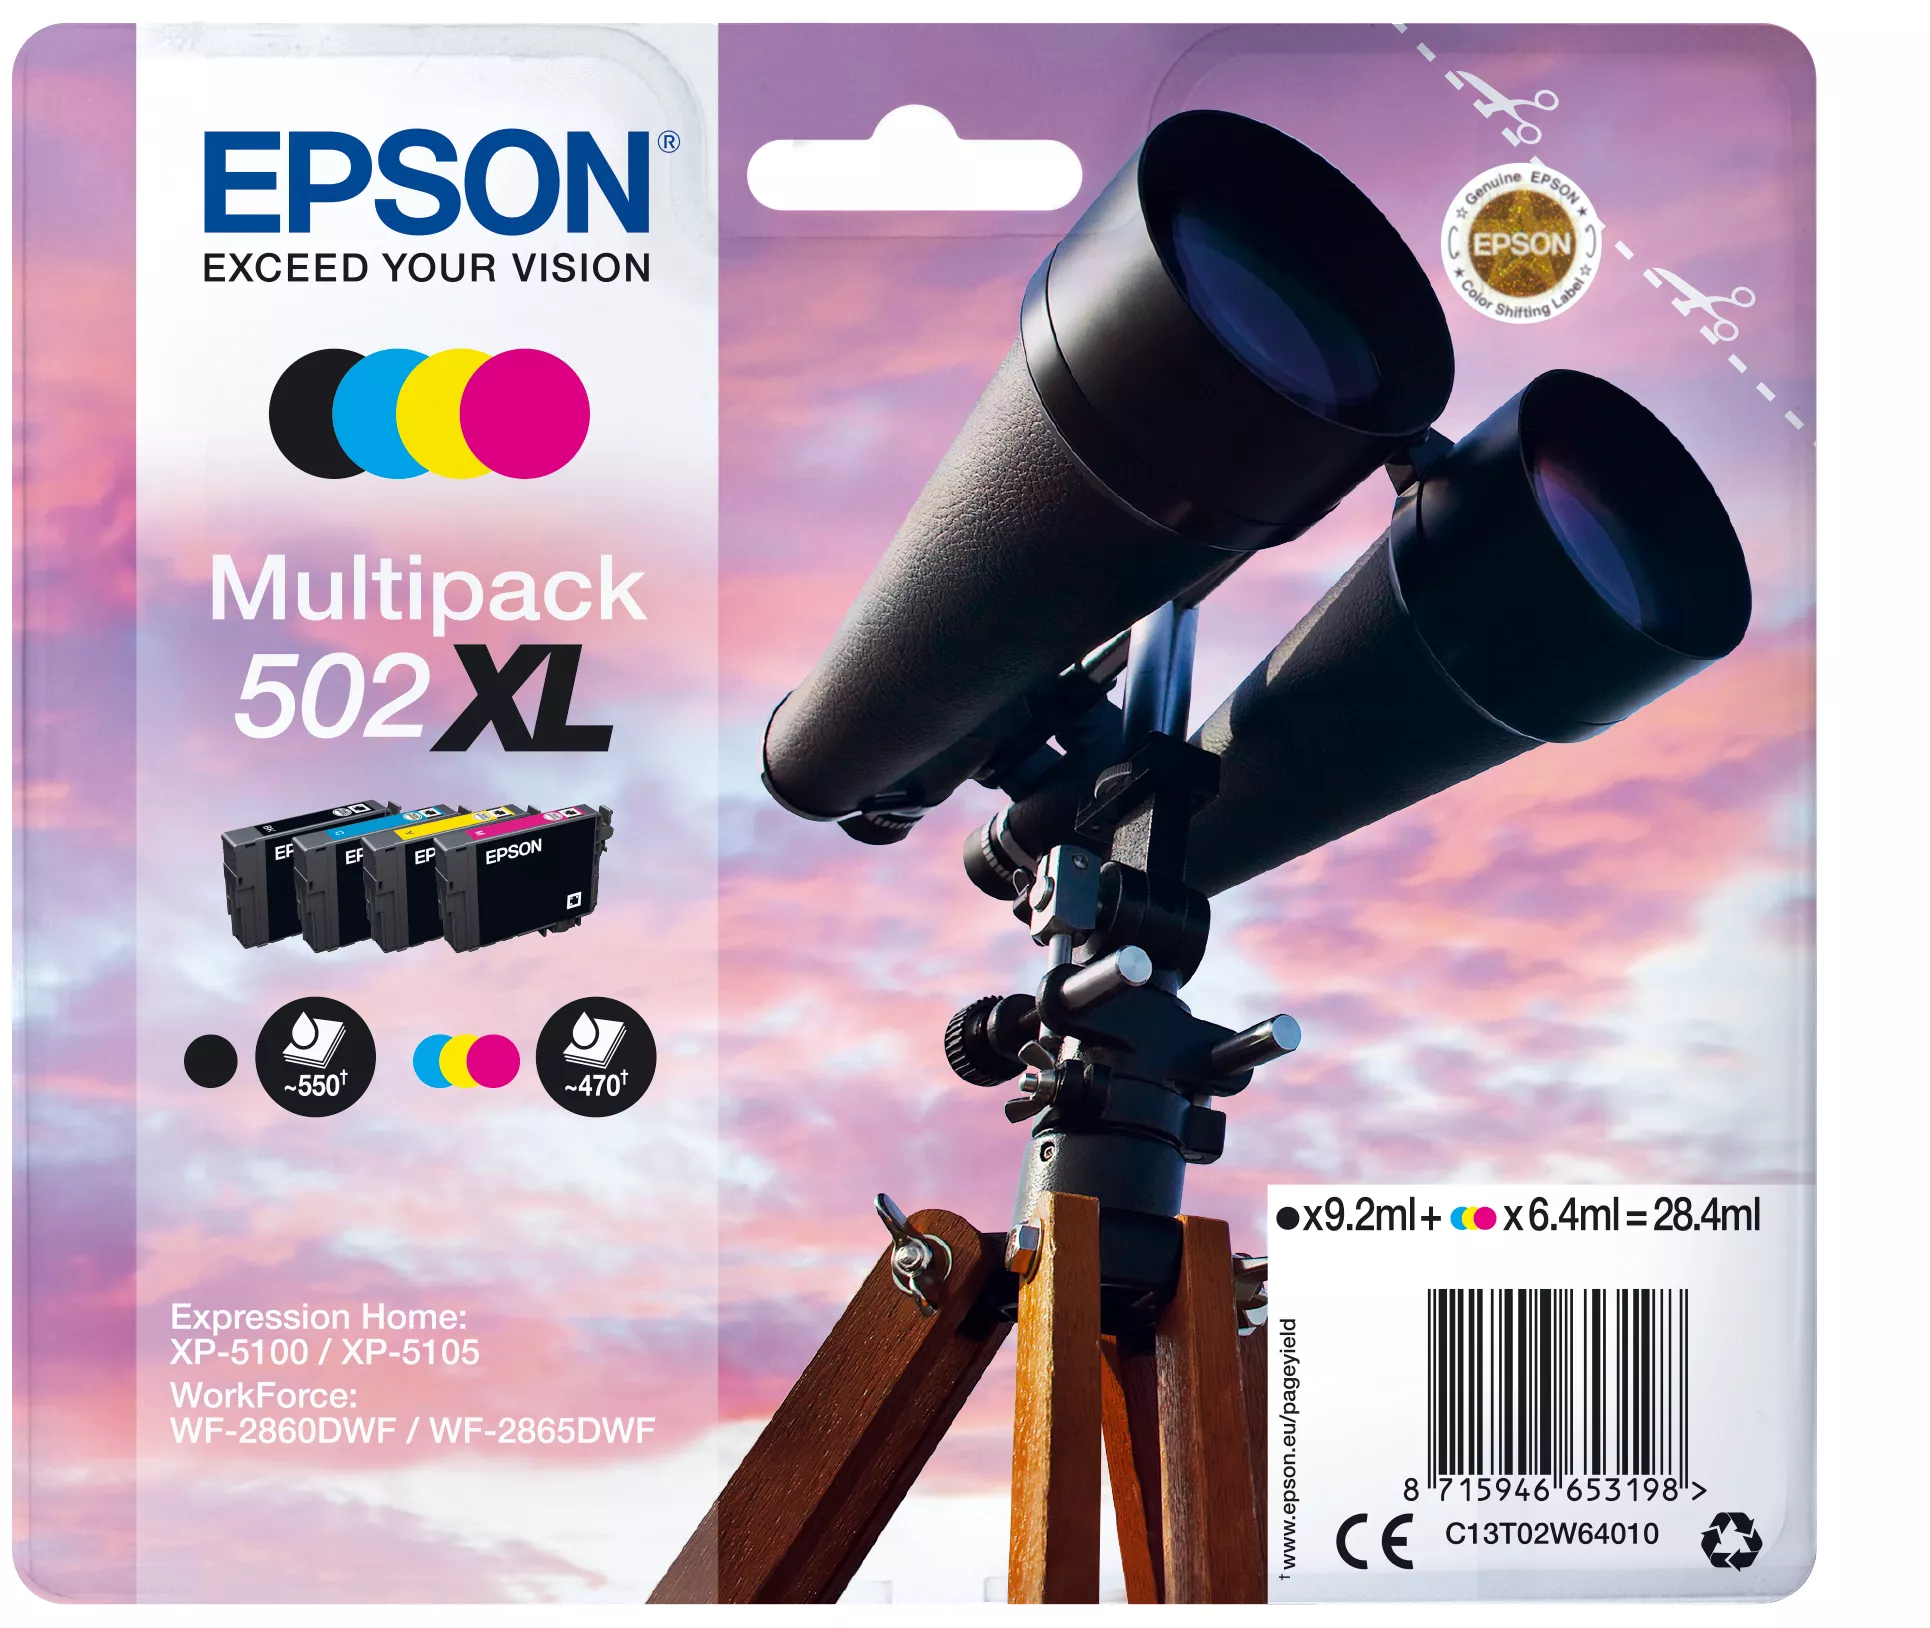 Achat EPSON Multipack 4-colours 502XL Ink SEC et autres produits de la marque Epson